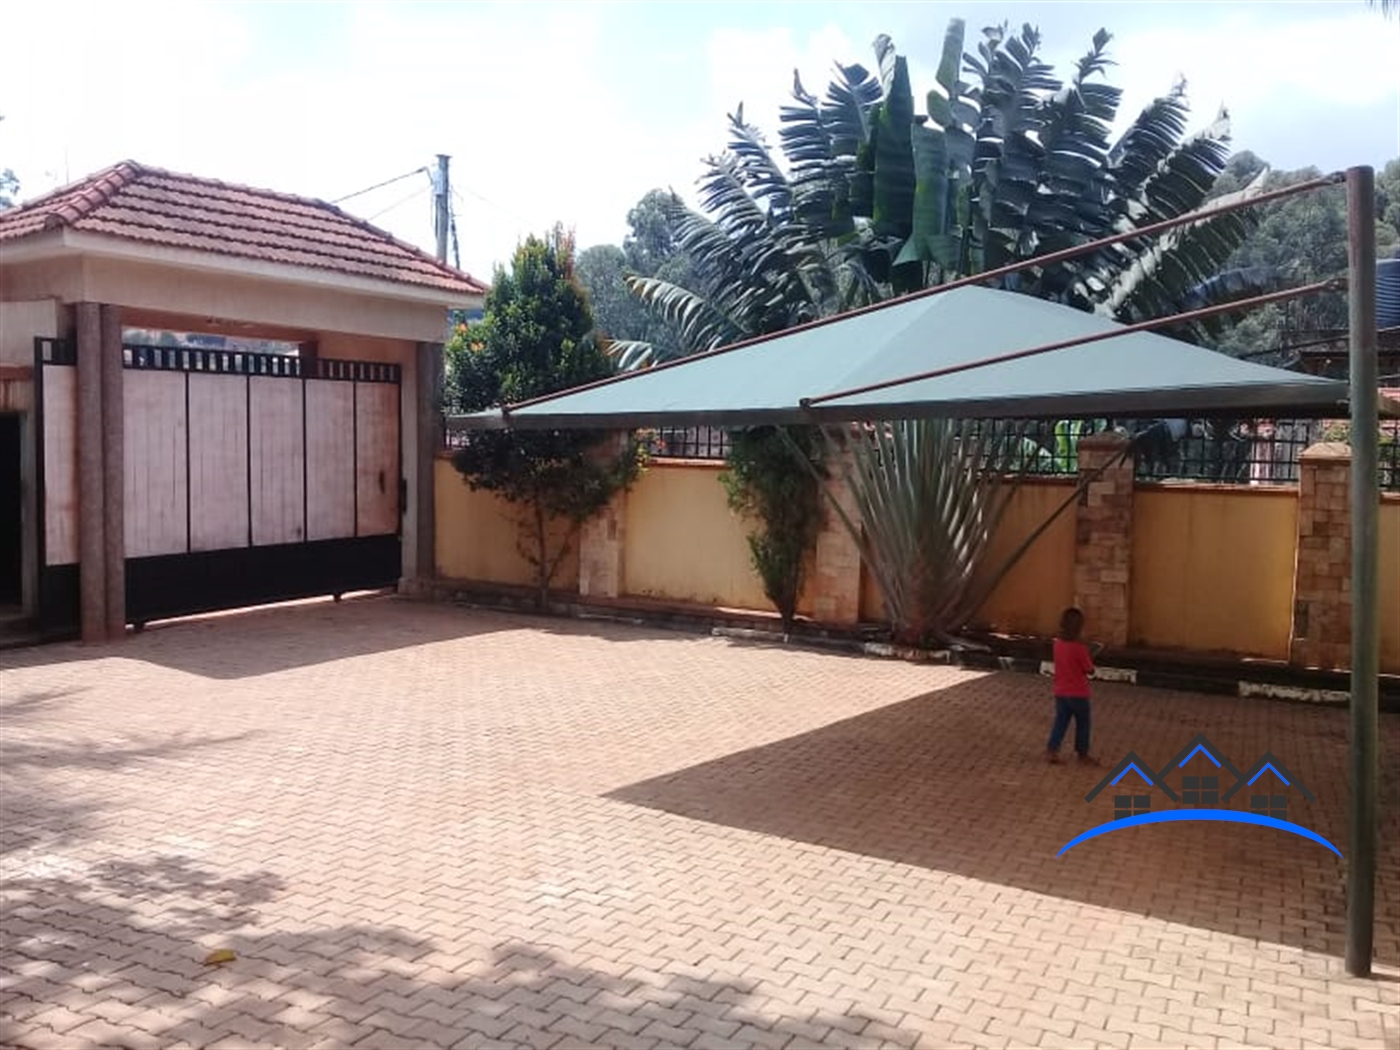 Storeyed house for sale in Komamboga Wakiso